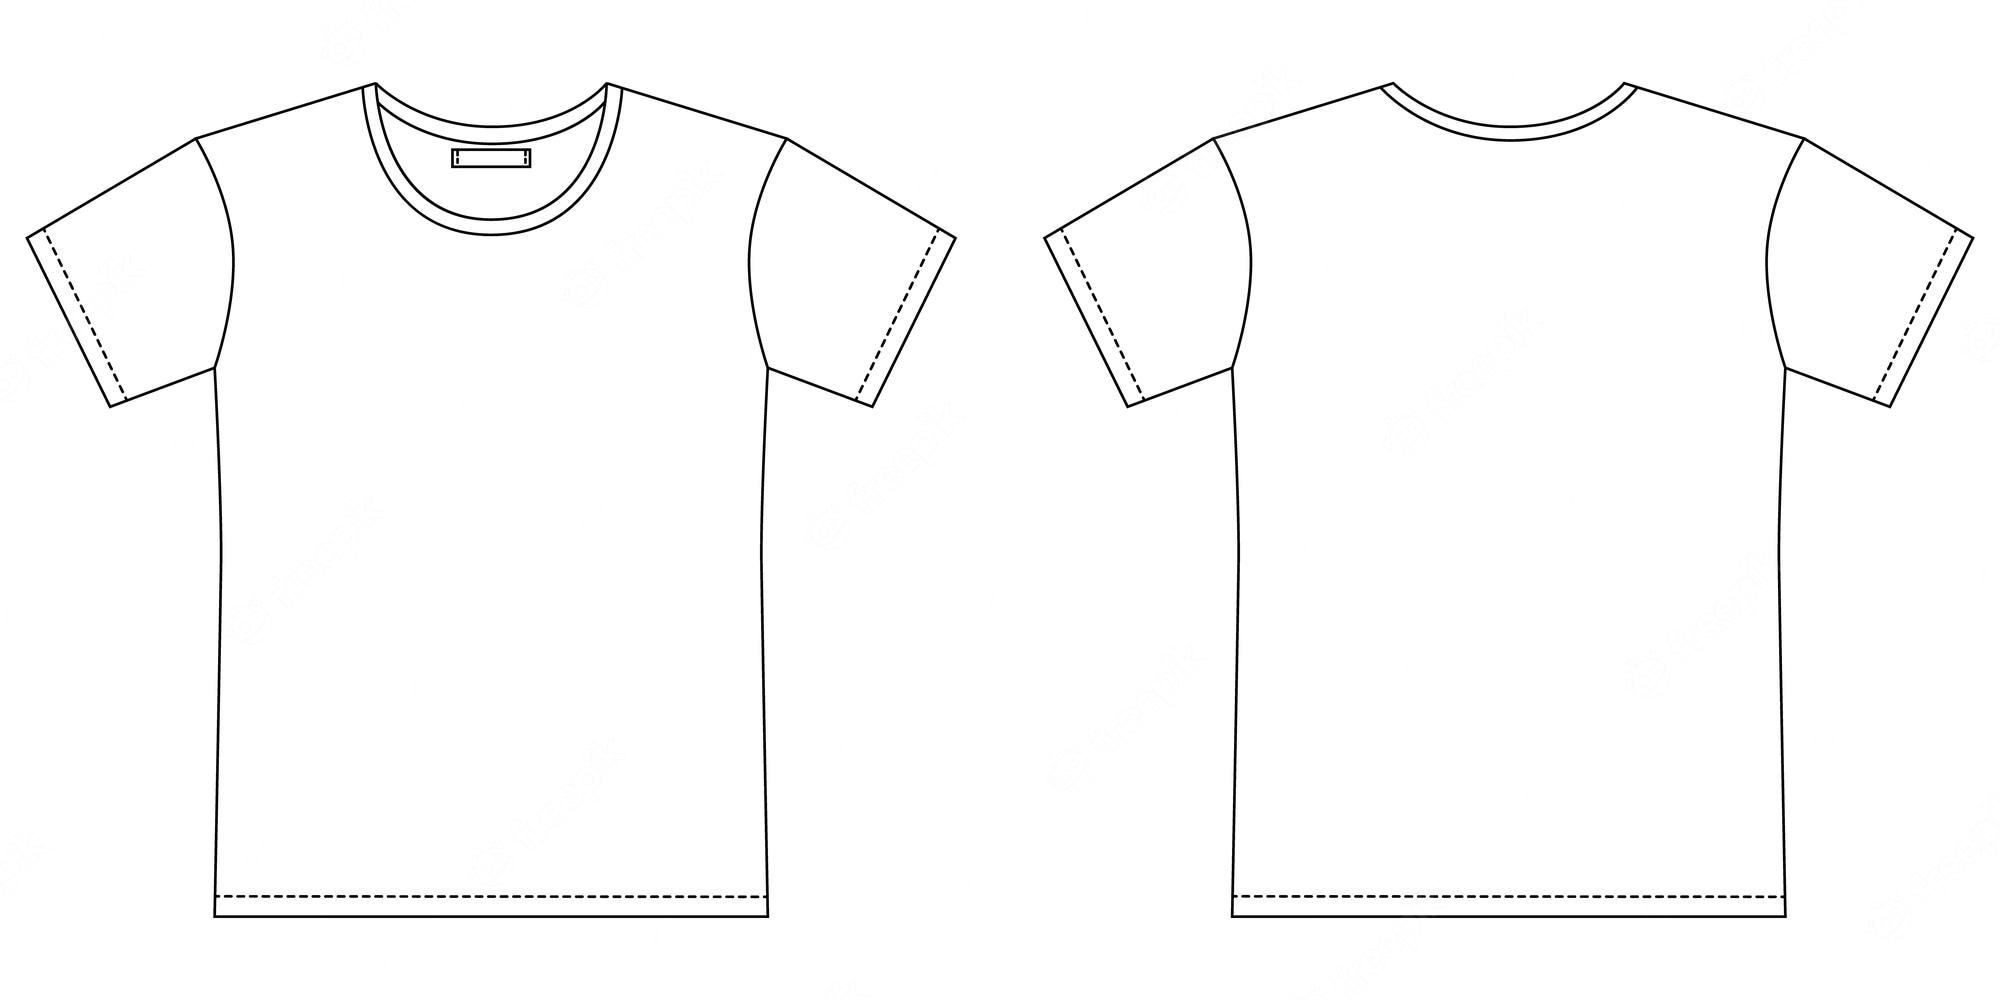 Bilder – T Shirt Design  Gratis Vektoren, Fotos und PSDs Pertaining To Blank Tshirt Template Printable